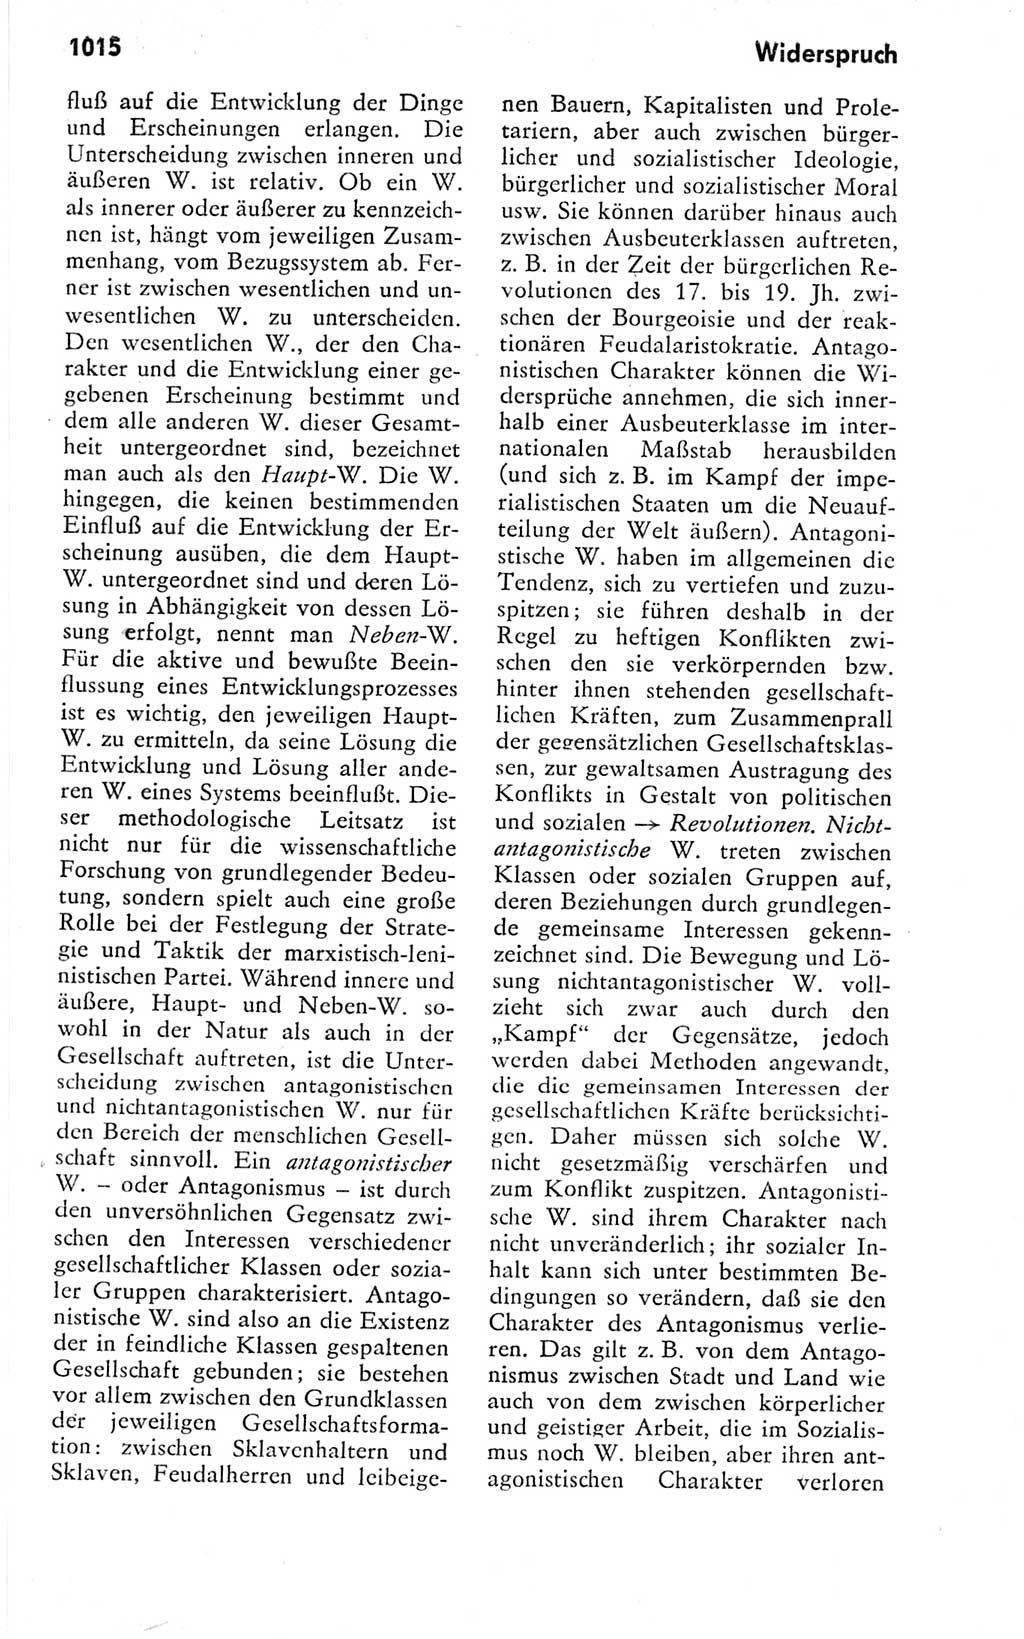 Kleines politisches Wörterbuch [Deutsche Demokratische Republik (DDR)] 1978, Seite 1015 (Kl. pol. Wb. DDR 1978, S. 1015)